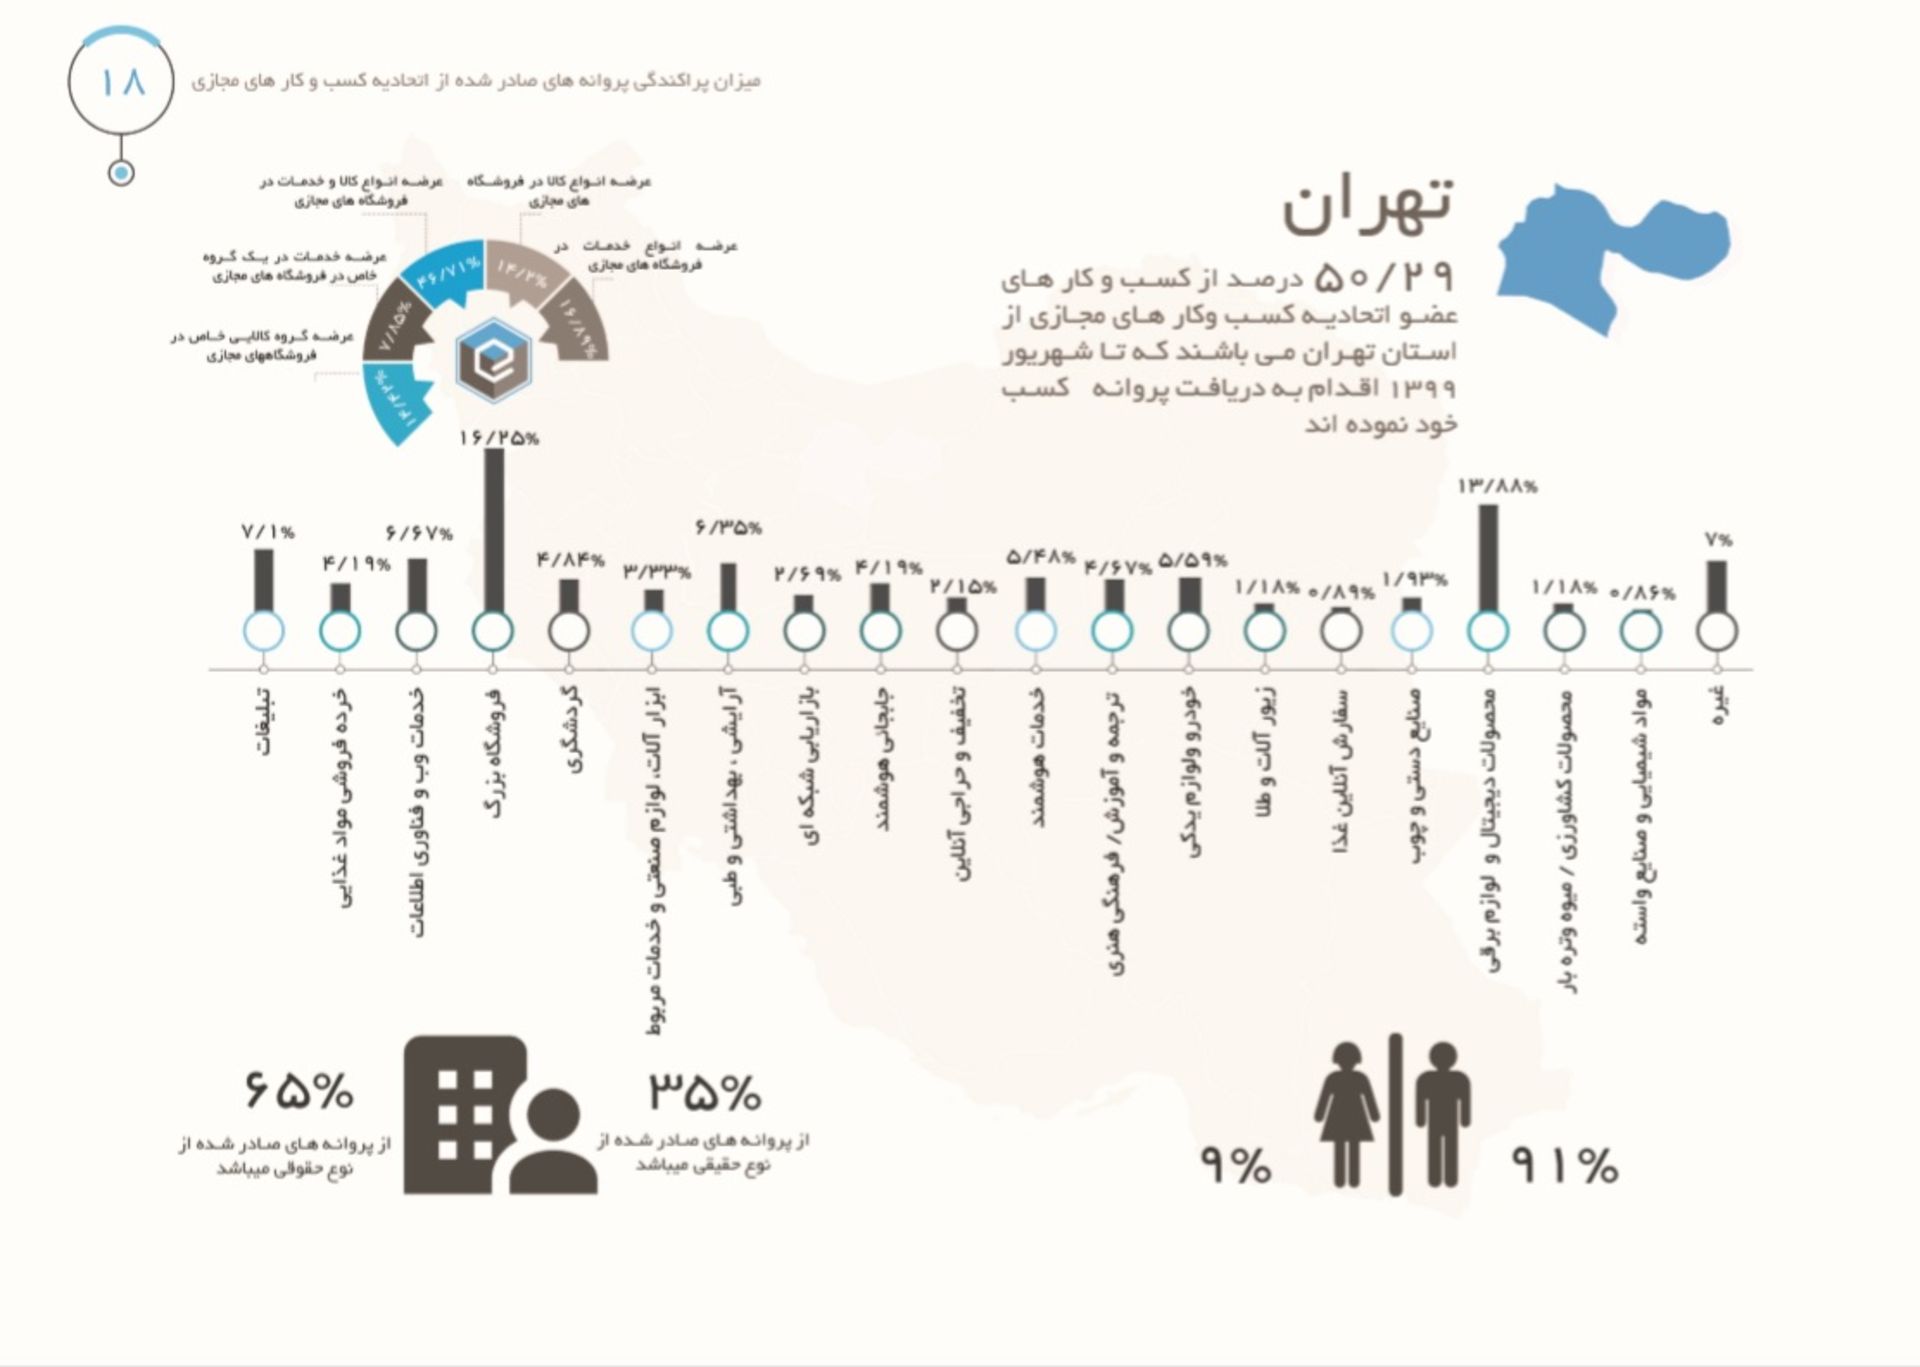 نمودار وضعیت پروانه صادرشده استان تهران ازسوی اتحادیه کسب و کارهای مجازی